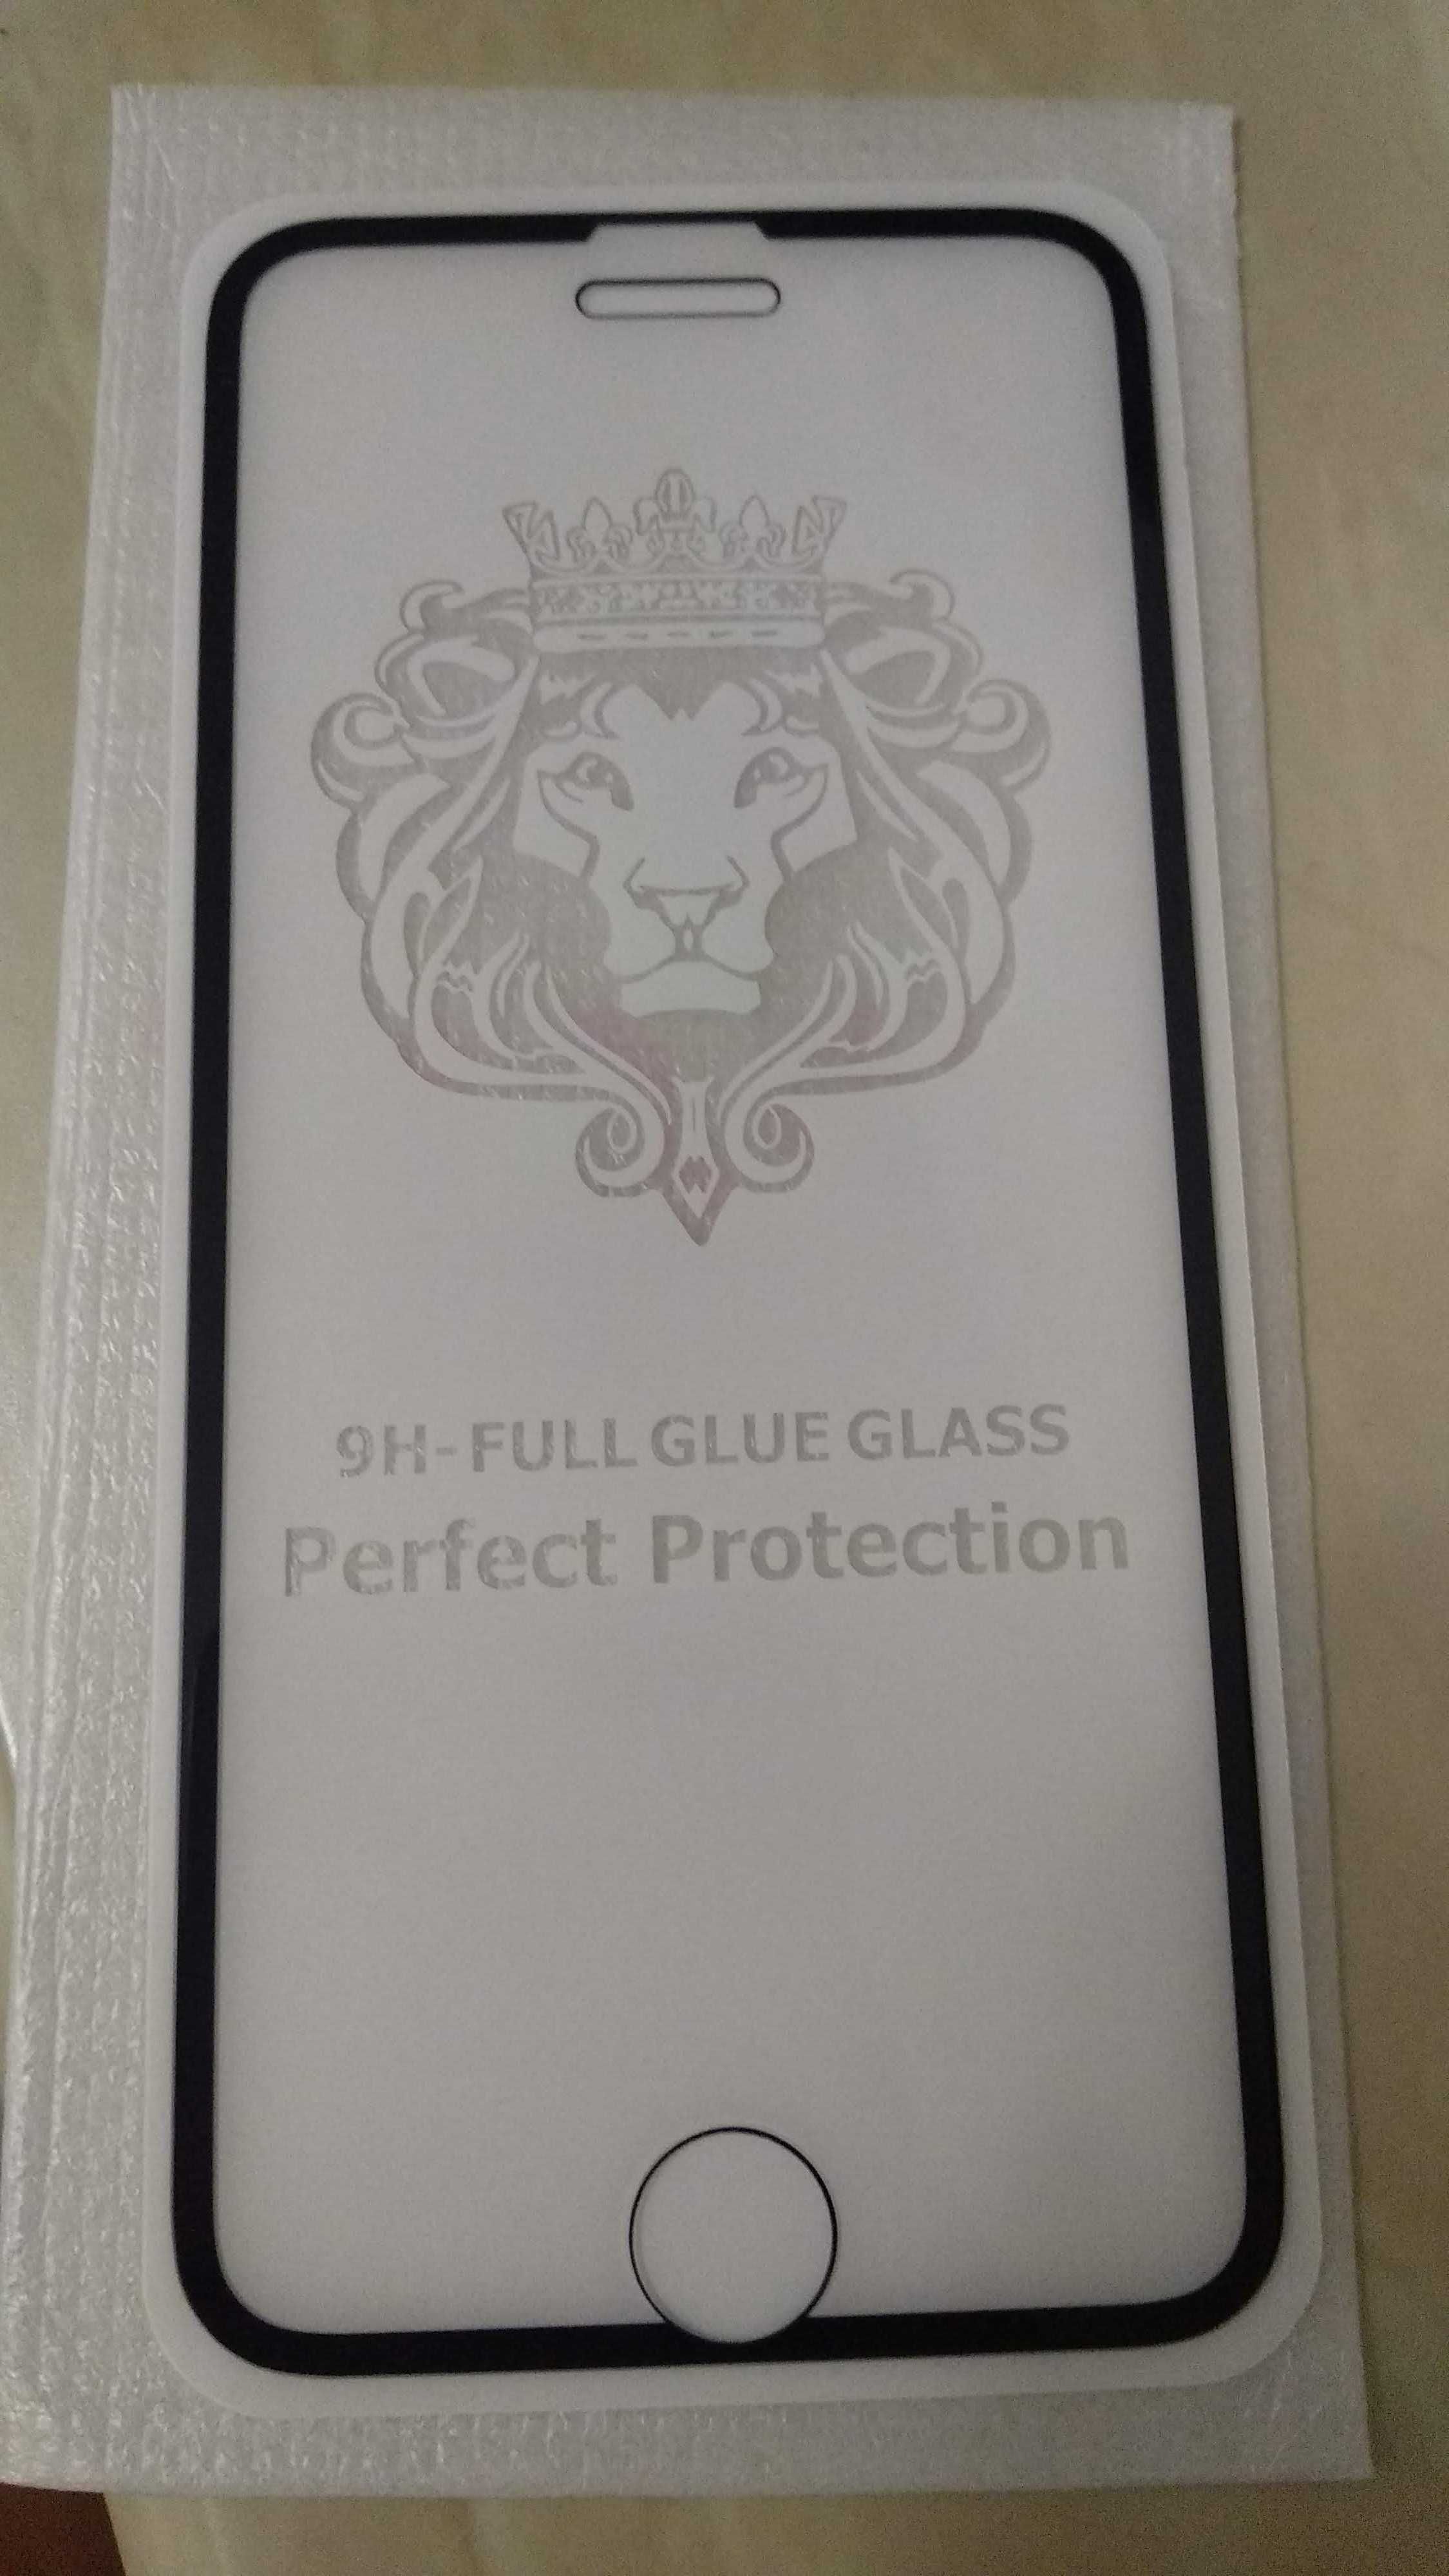 Защитное каленное стекло айфон 6+:7+:8+ (универсальное) iPhone